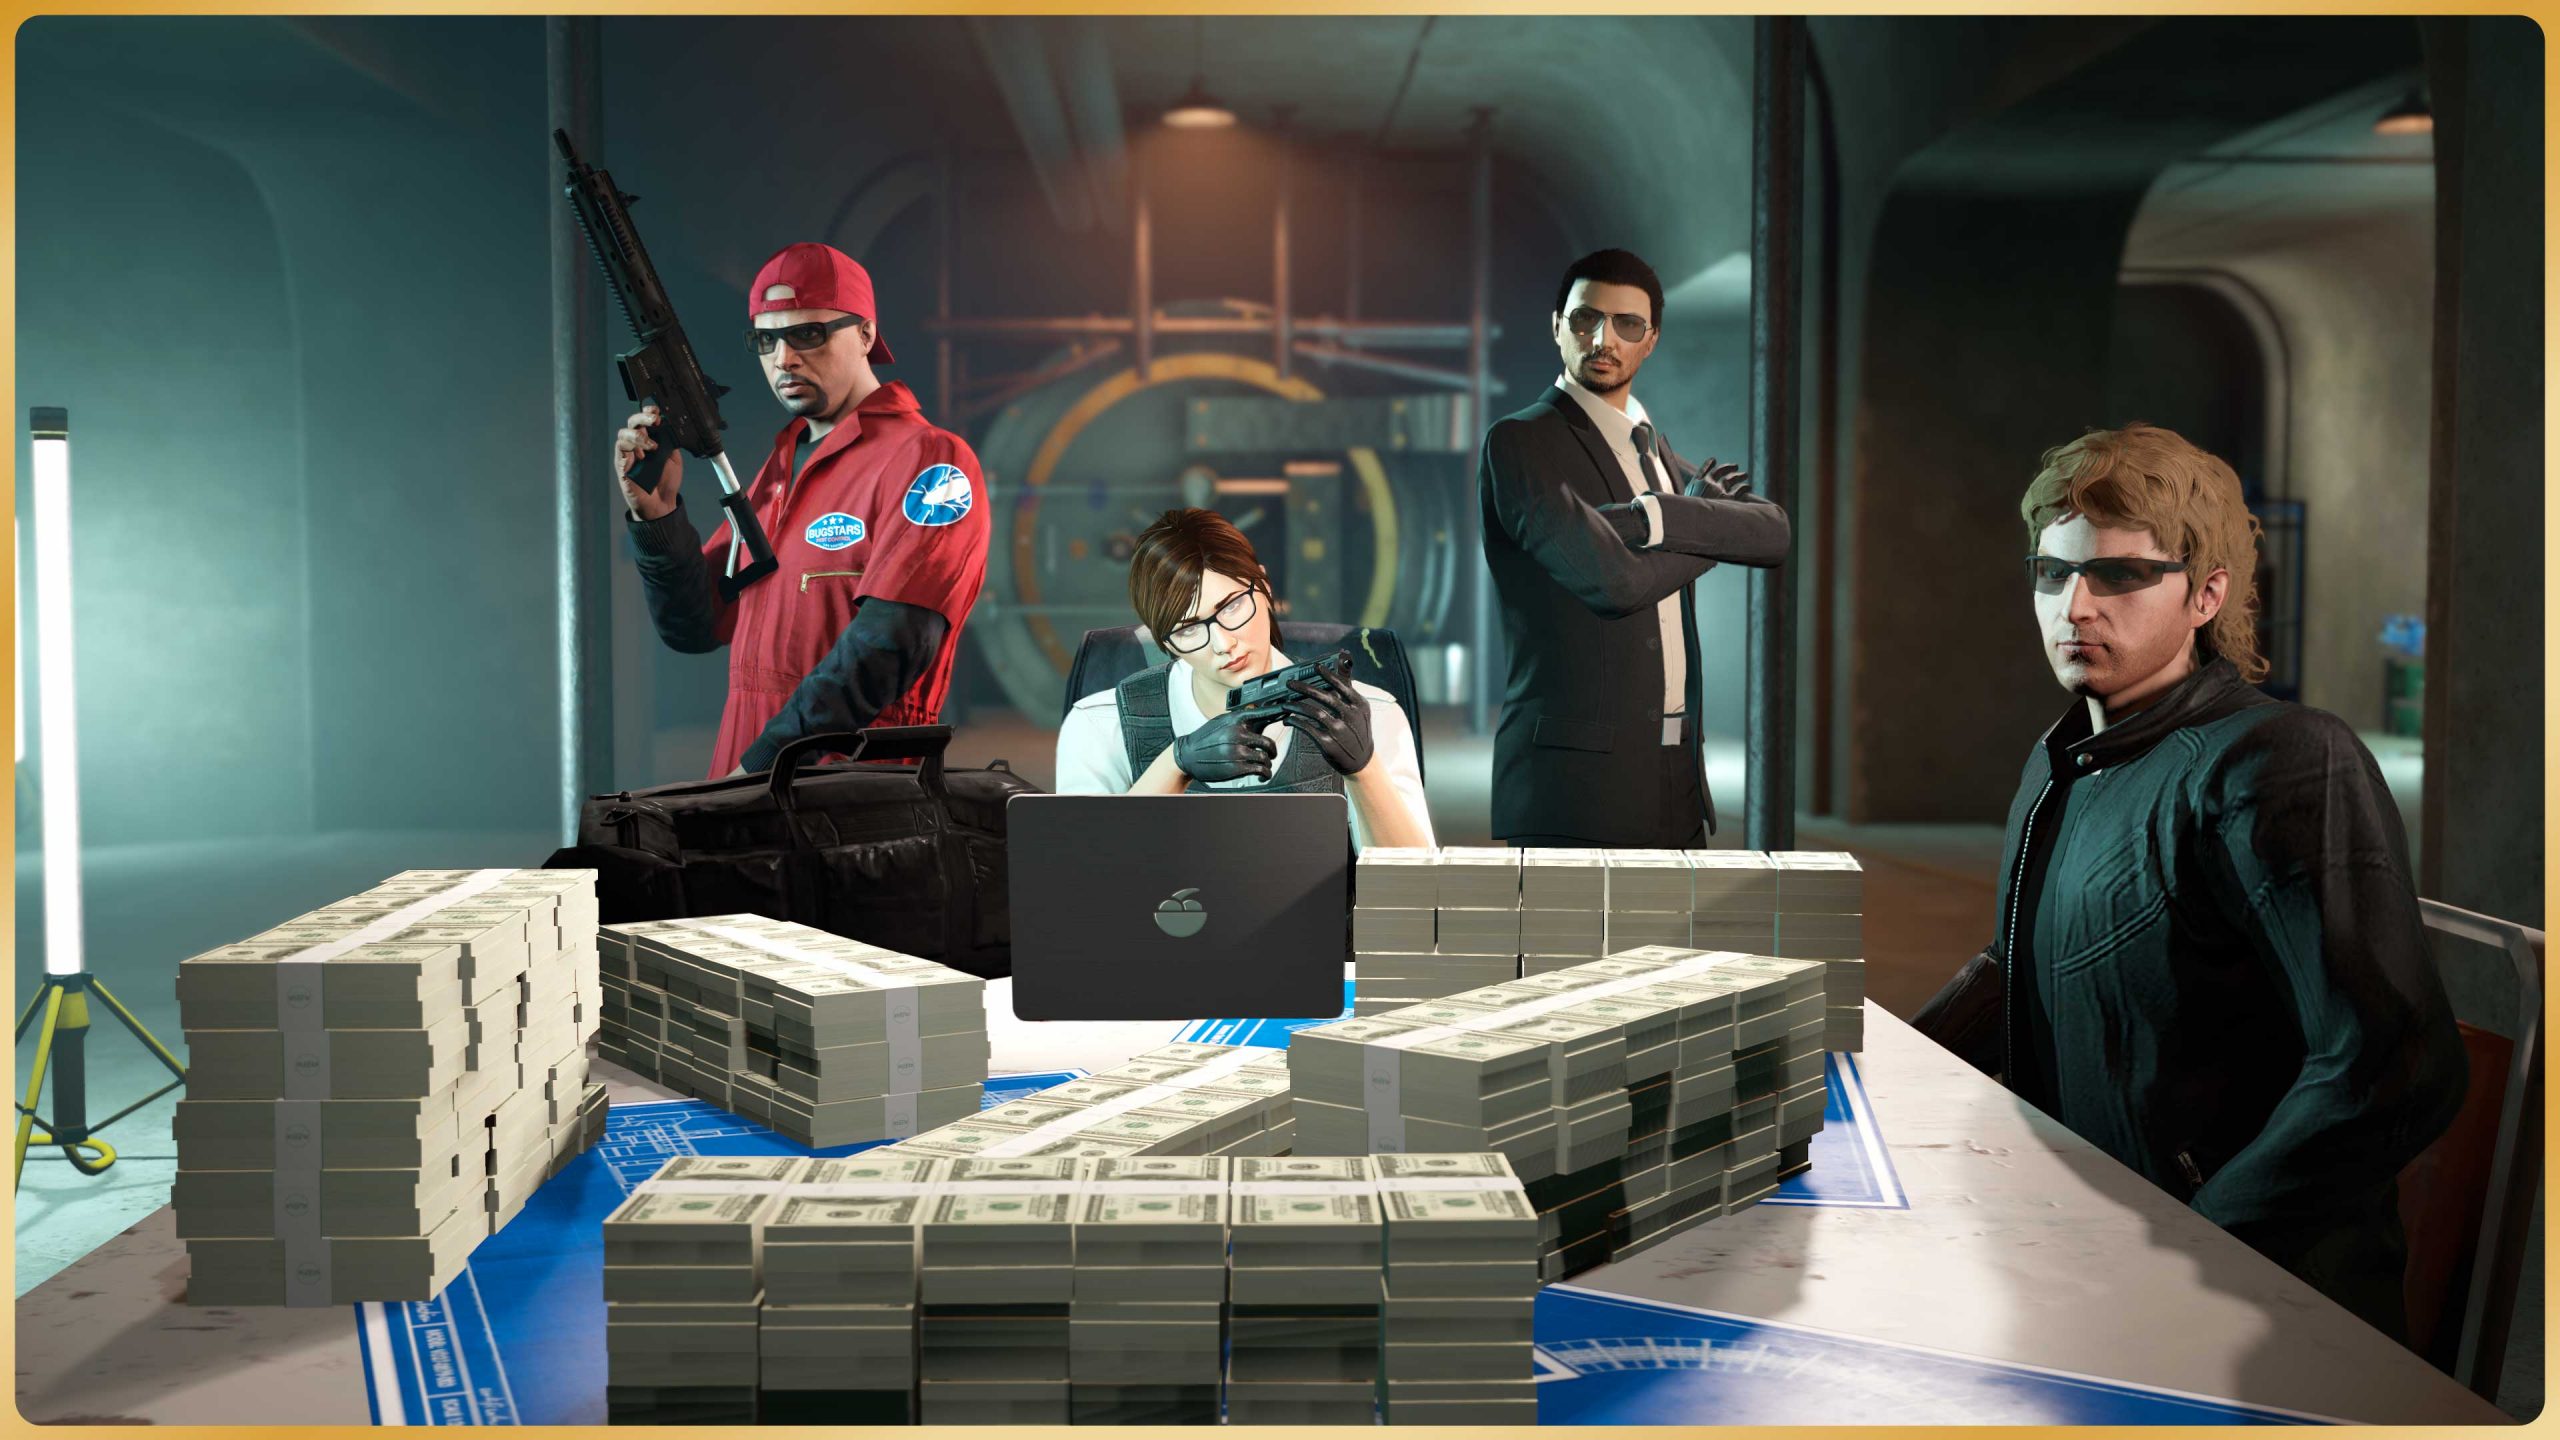 The Last Team Standing Event Weekend in GTA Online: Exclusive Free Unlocks,  Bonus RP & More - Rockstar Games